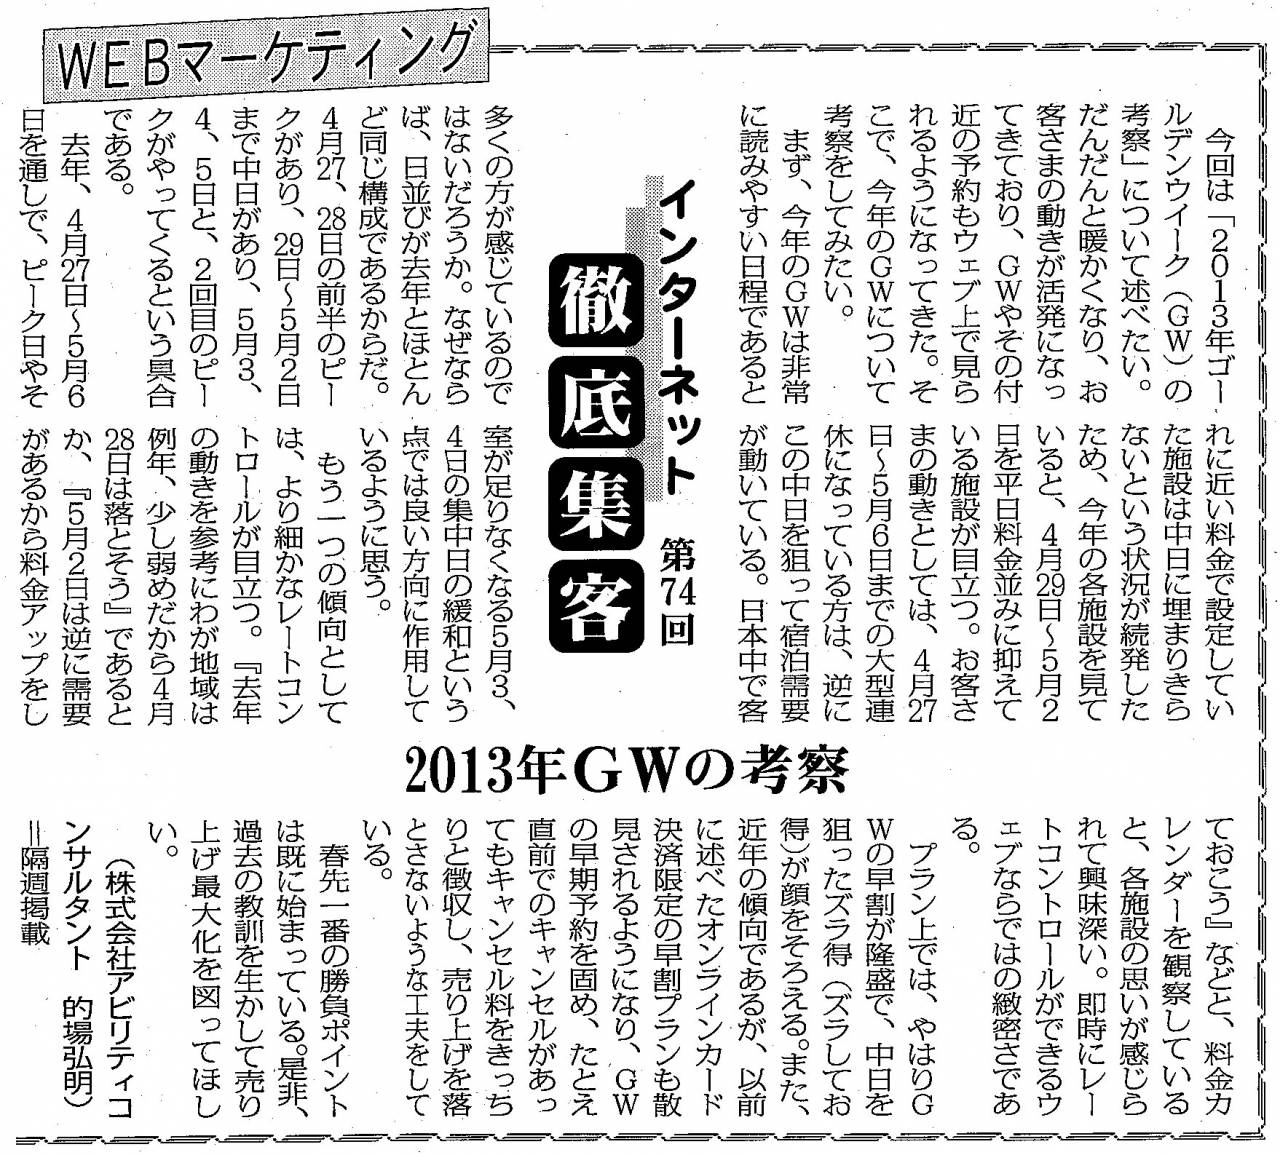 【第74回】WEBマーケティング 2013年GWの考察